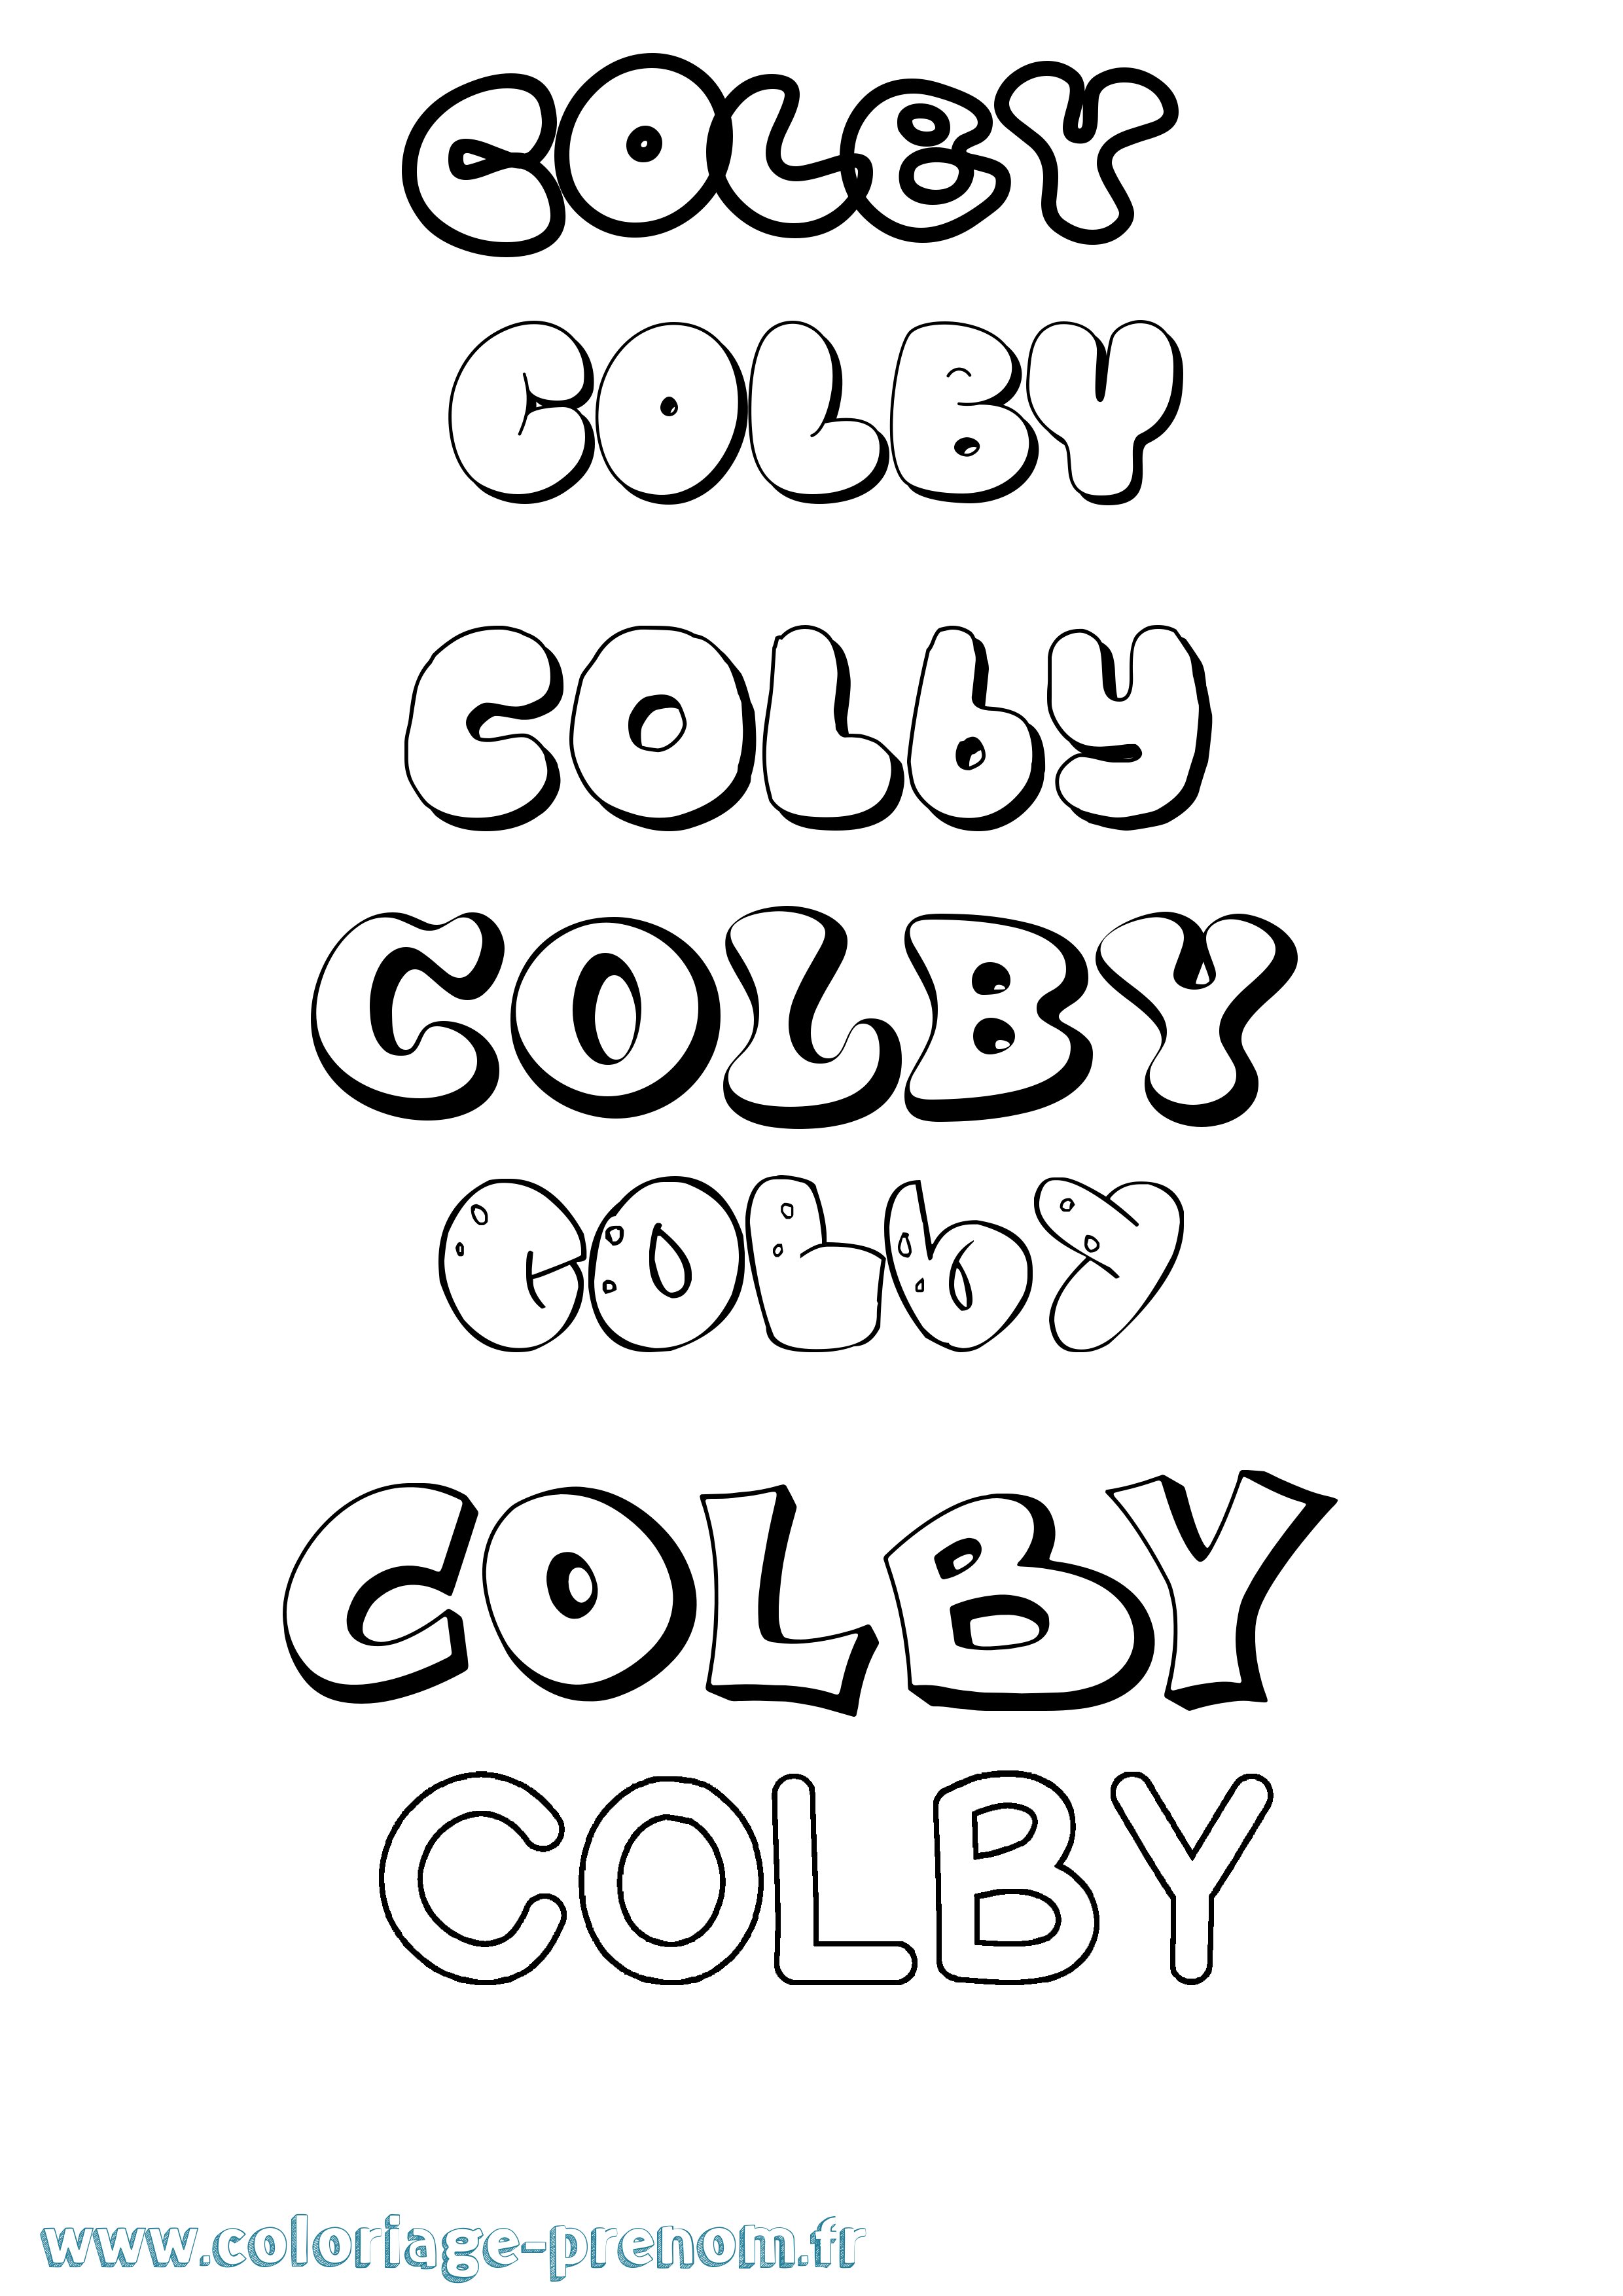 Coloriage prénom Colby Bubble